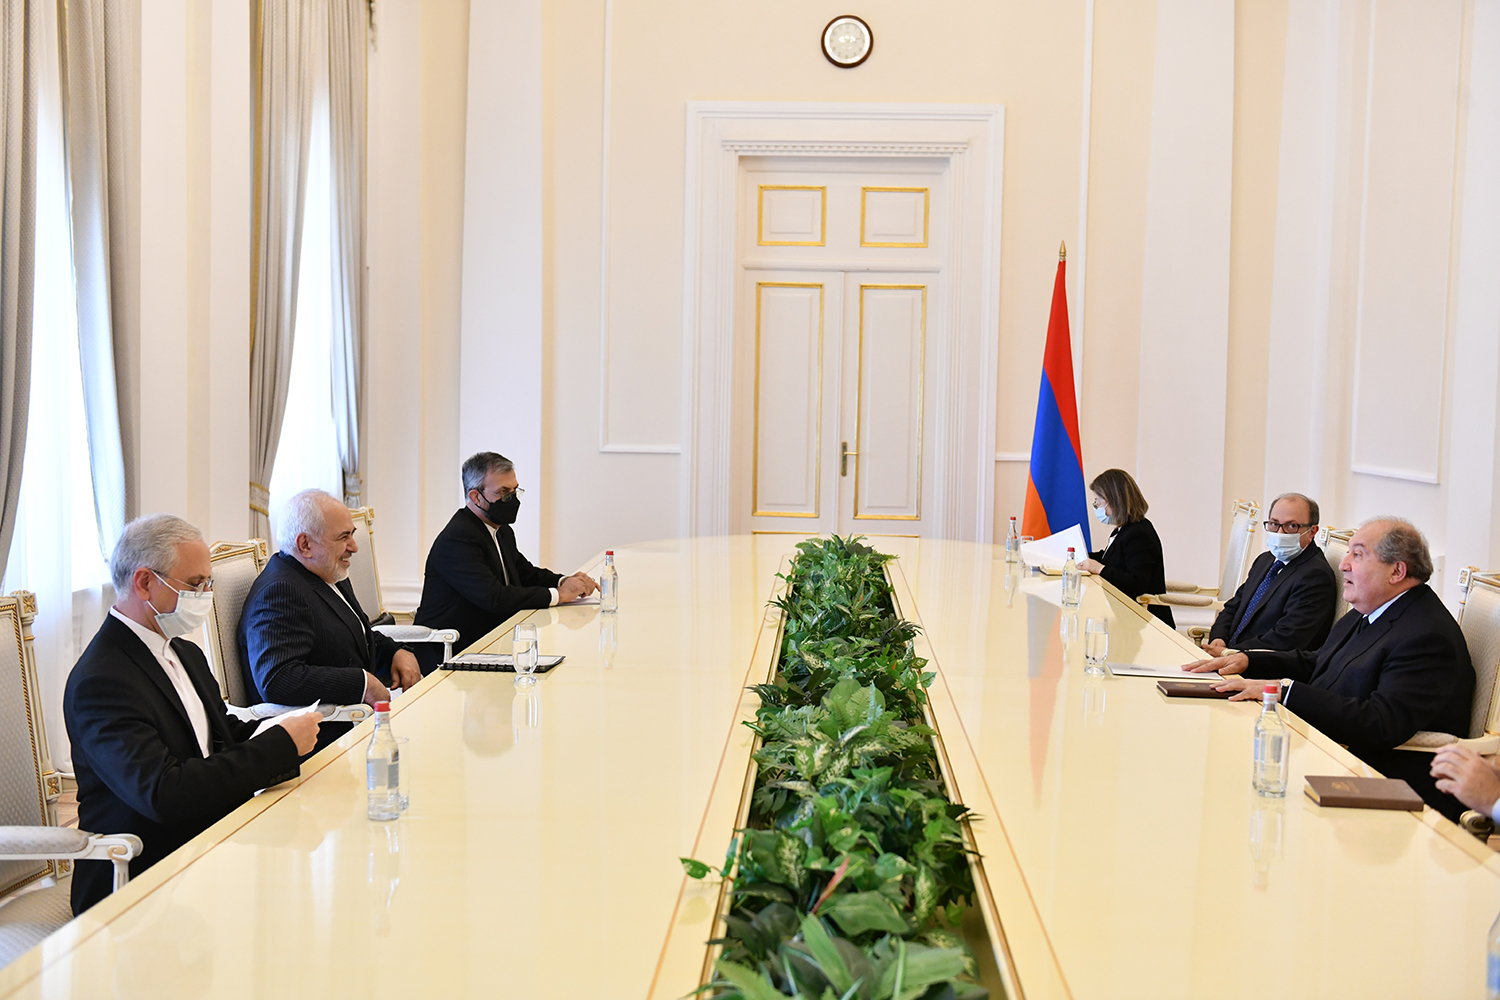 Այսօր չափազանց կարևոր է դարձել հայ-իրանական հարաբերությունների առավել խորացումը. նախագահ